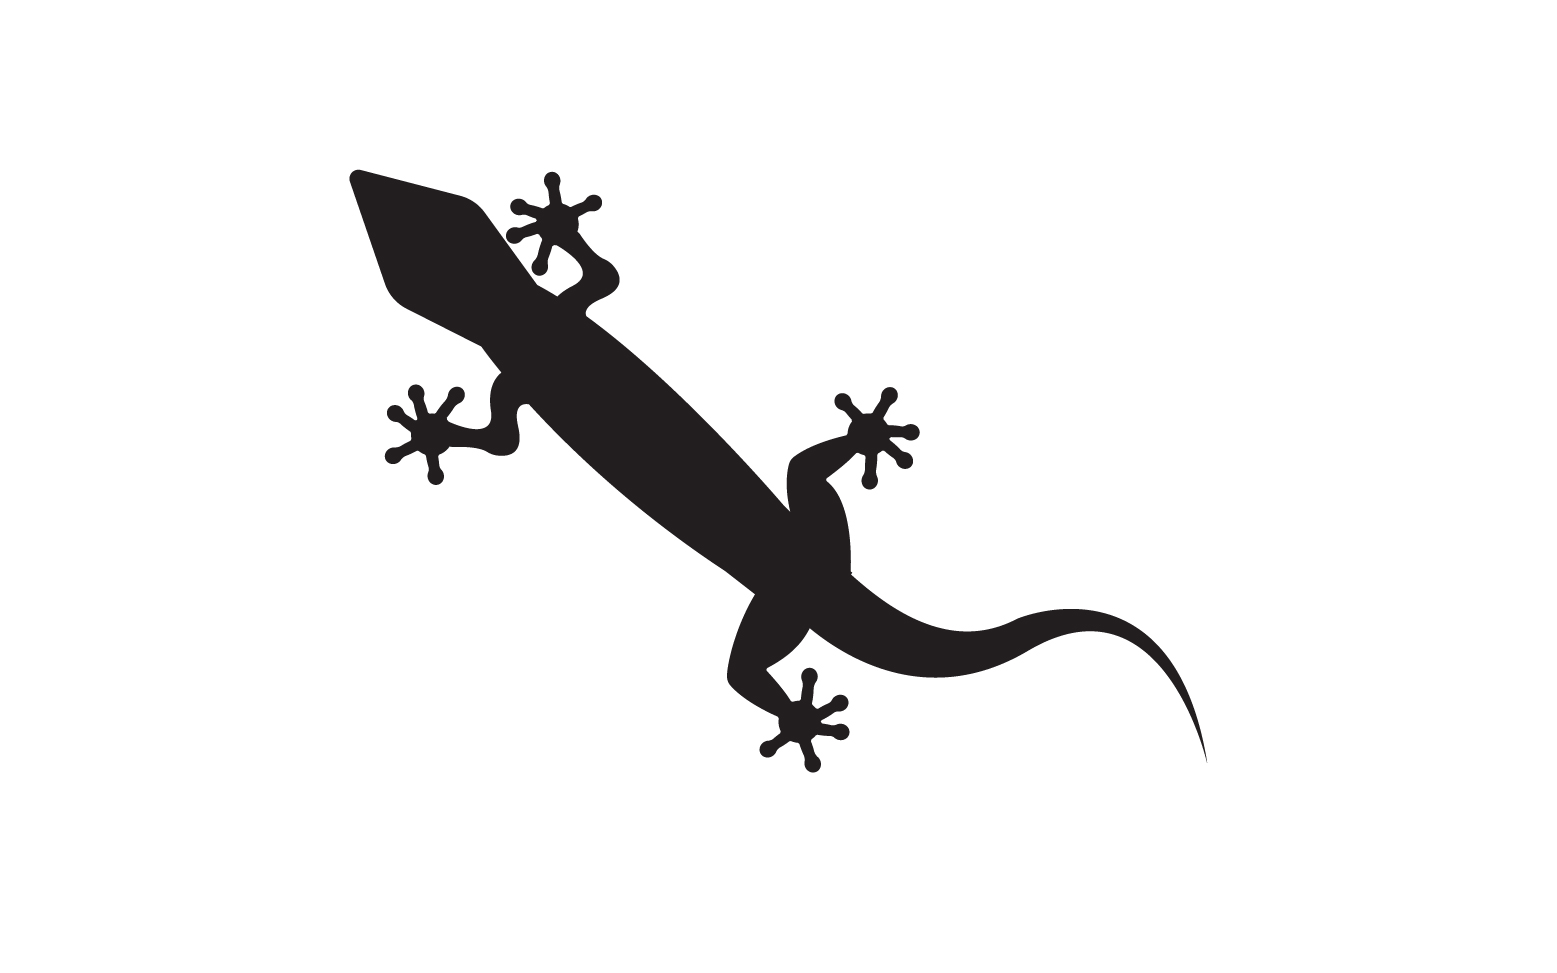 Lizard chameleon home lizard logo v42